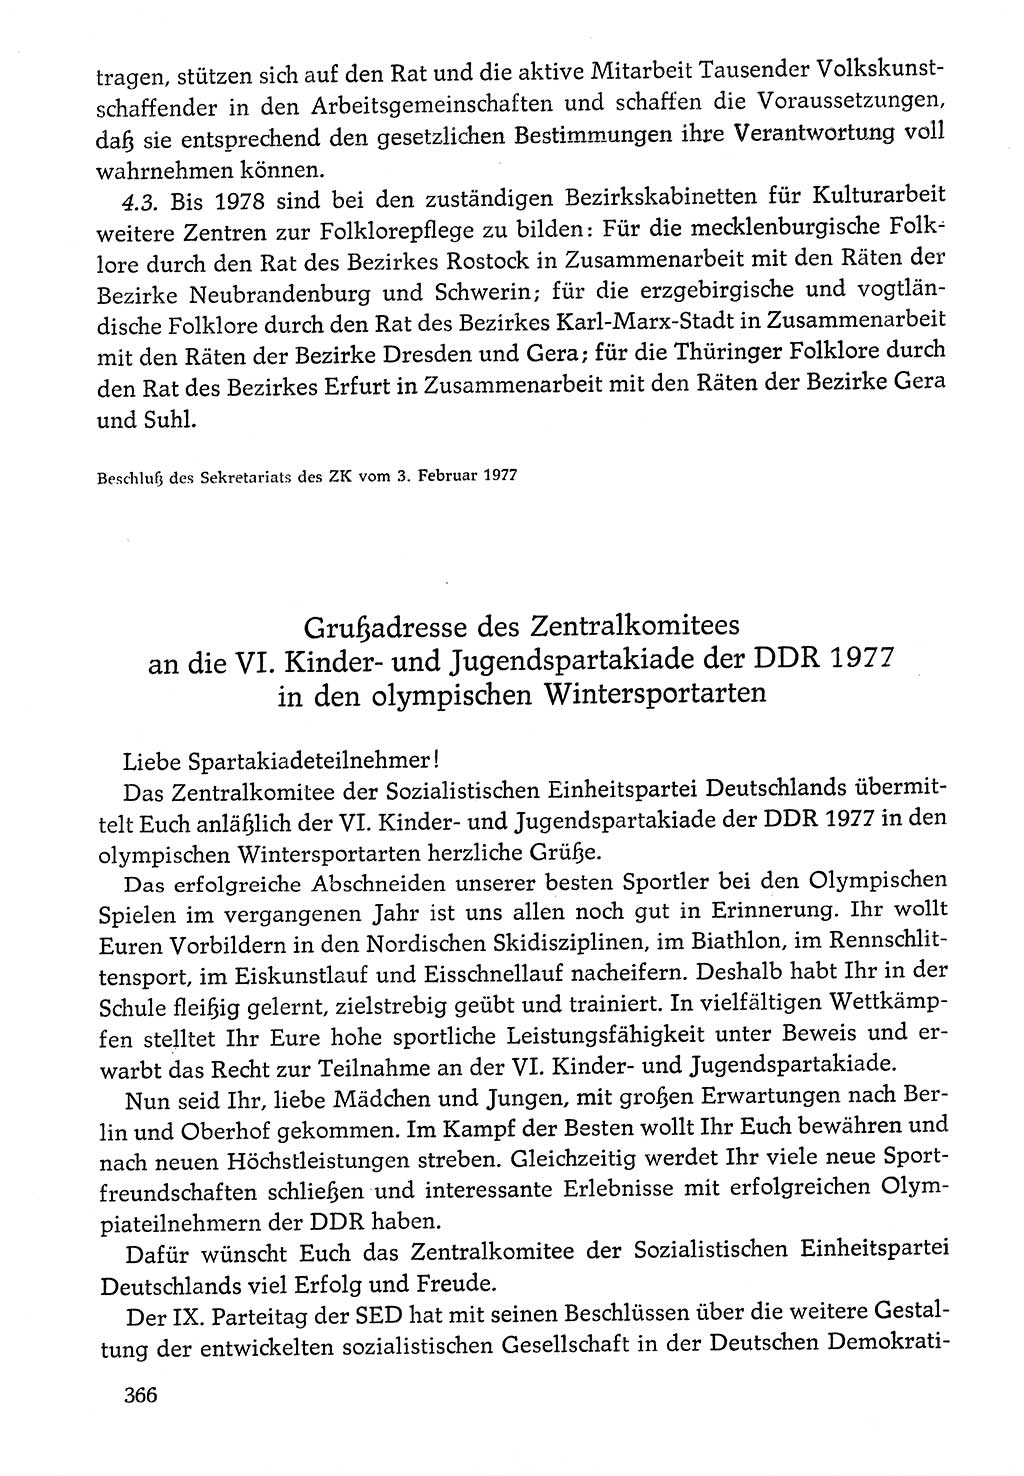 Dokumente der Sozialistischen Einheitspartei Deutschlands (SED) [Deutsche Demokratische Republik (DDR)] 1976-1977, Seite 366 (Dok. SED DDR 1976-1977, S. 366)